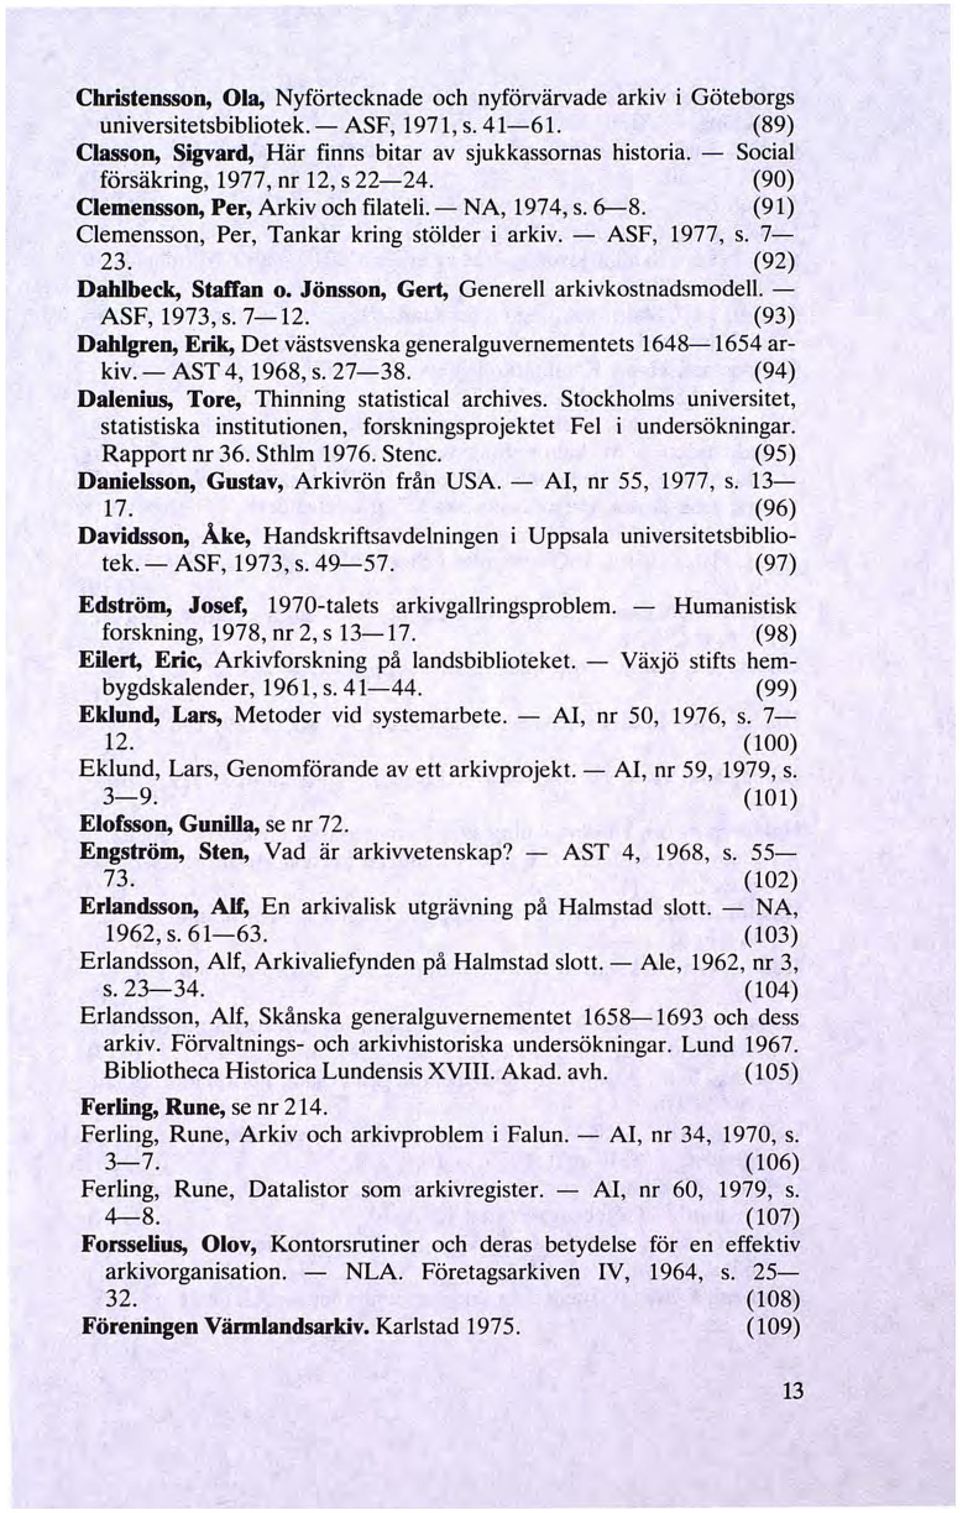 (92) Dahlbeck, Staffan o. Jönsson, Gert, Generell arkivkostnadsmodell - ASF, 1973, s. 7-12. (93) Dahlgren, Erik, Det västsvenska generalguvernementets 1648-1654 arkiv.- AST 4, 1968, s. 27-38.